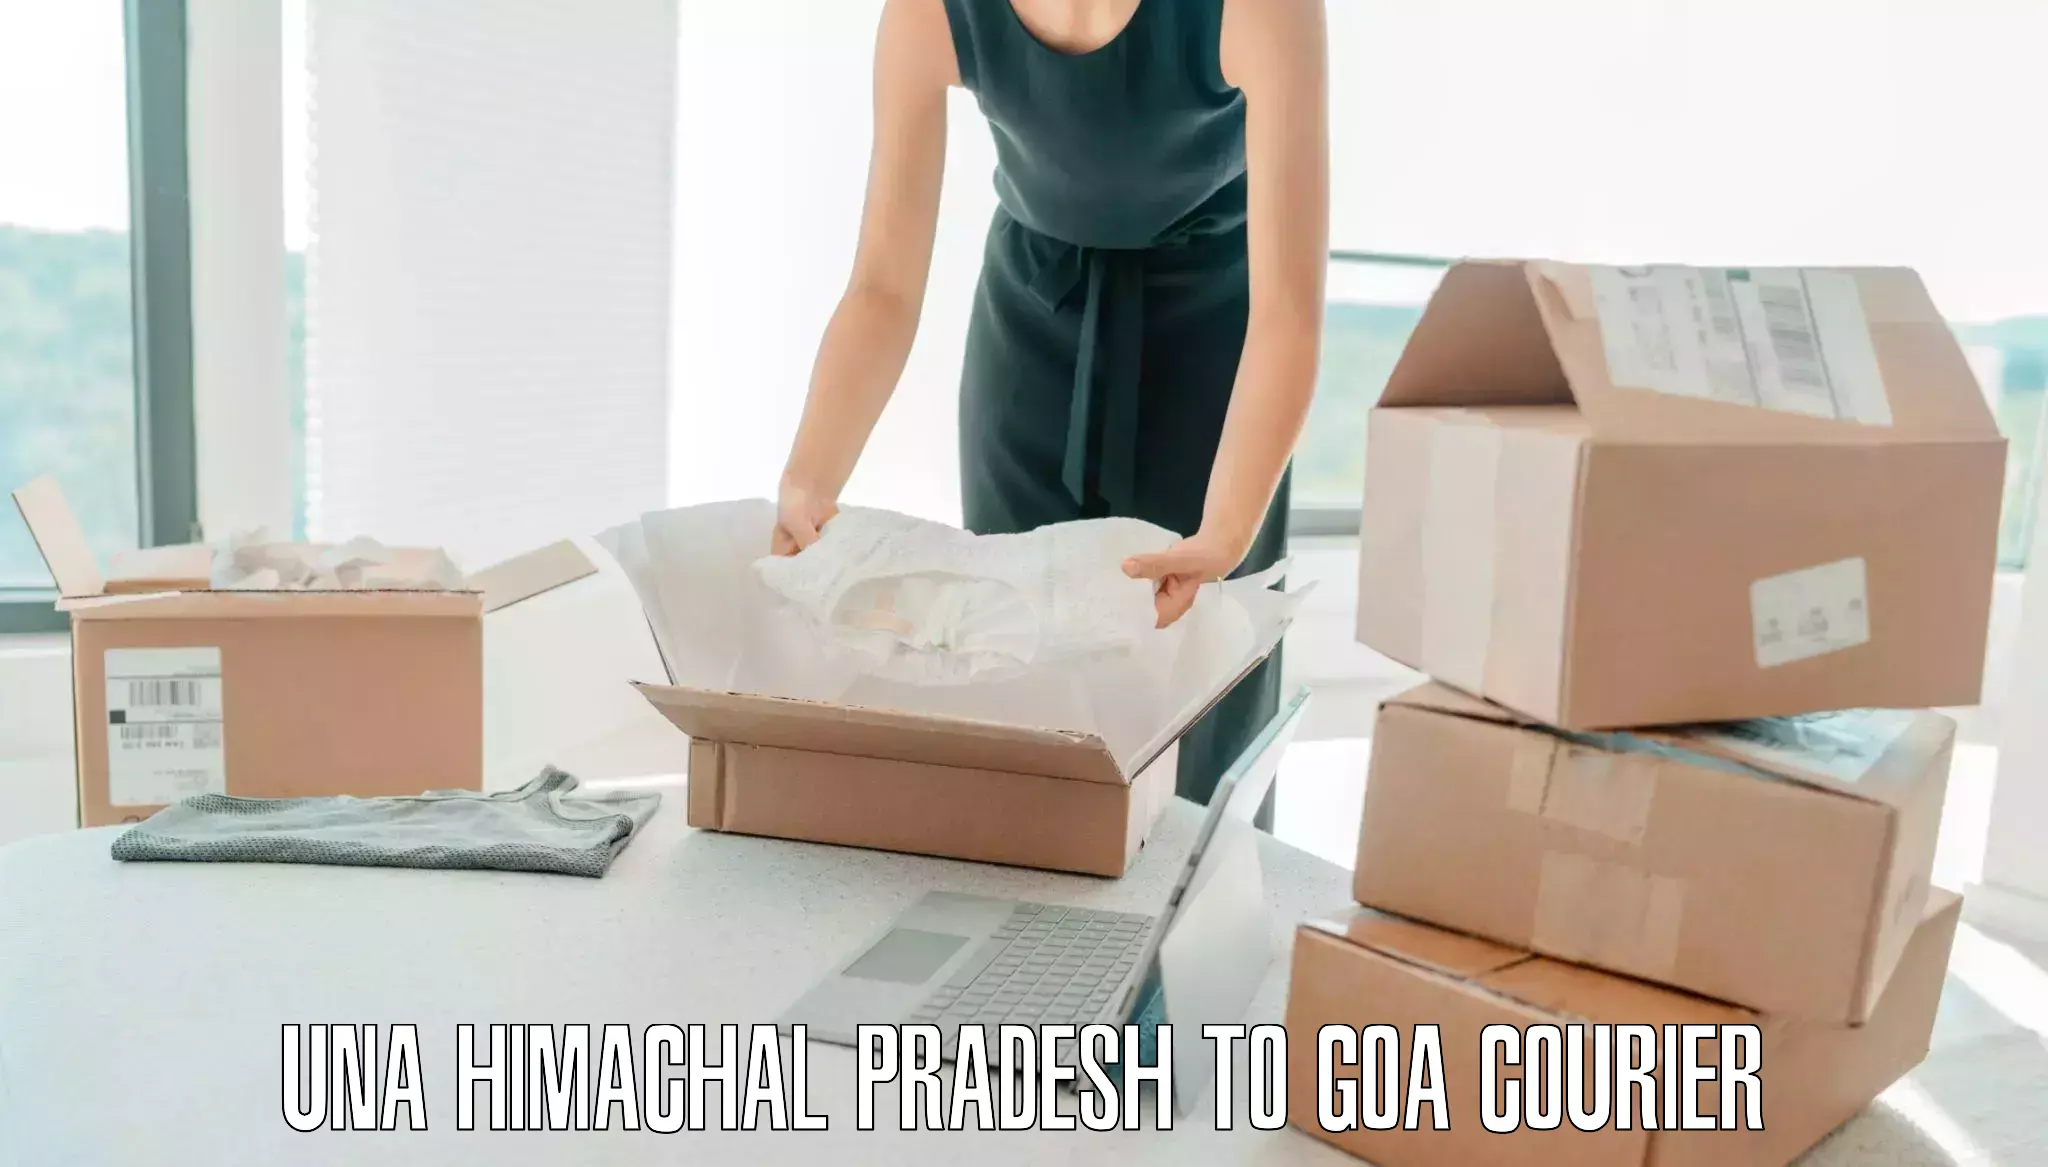 Luggage delivery app Una Himachal Pradesh to NIT Goa